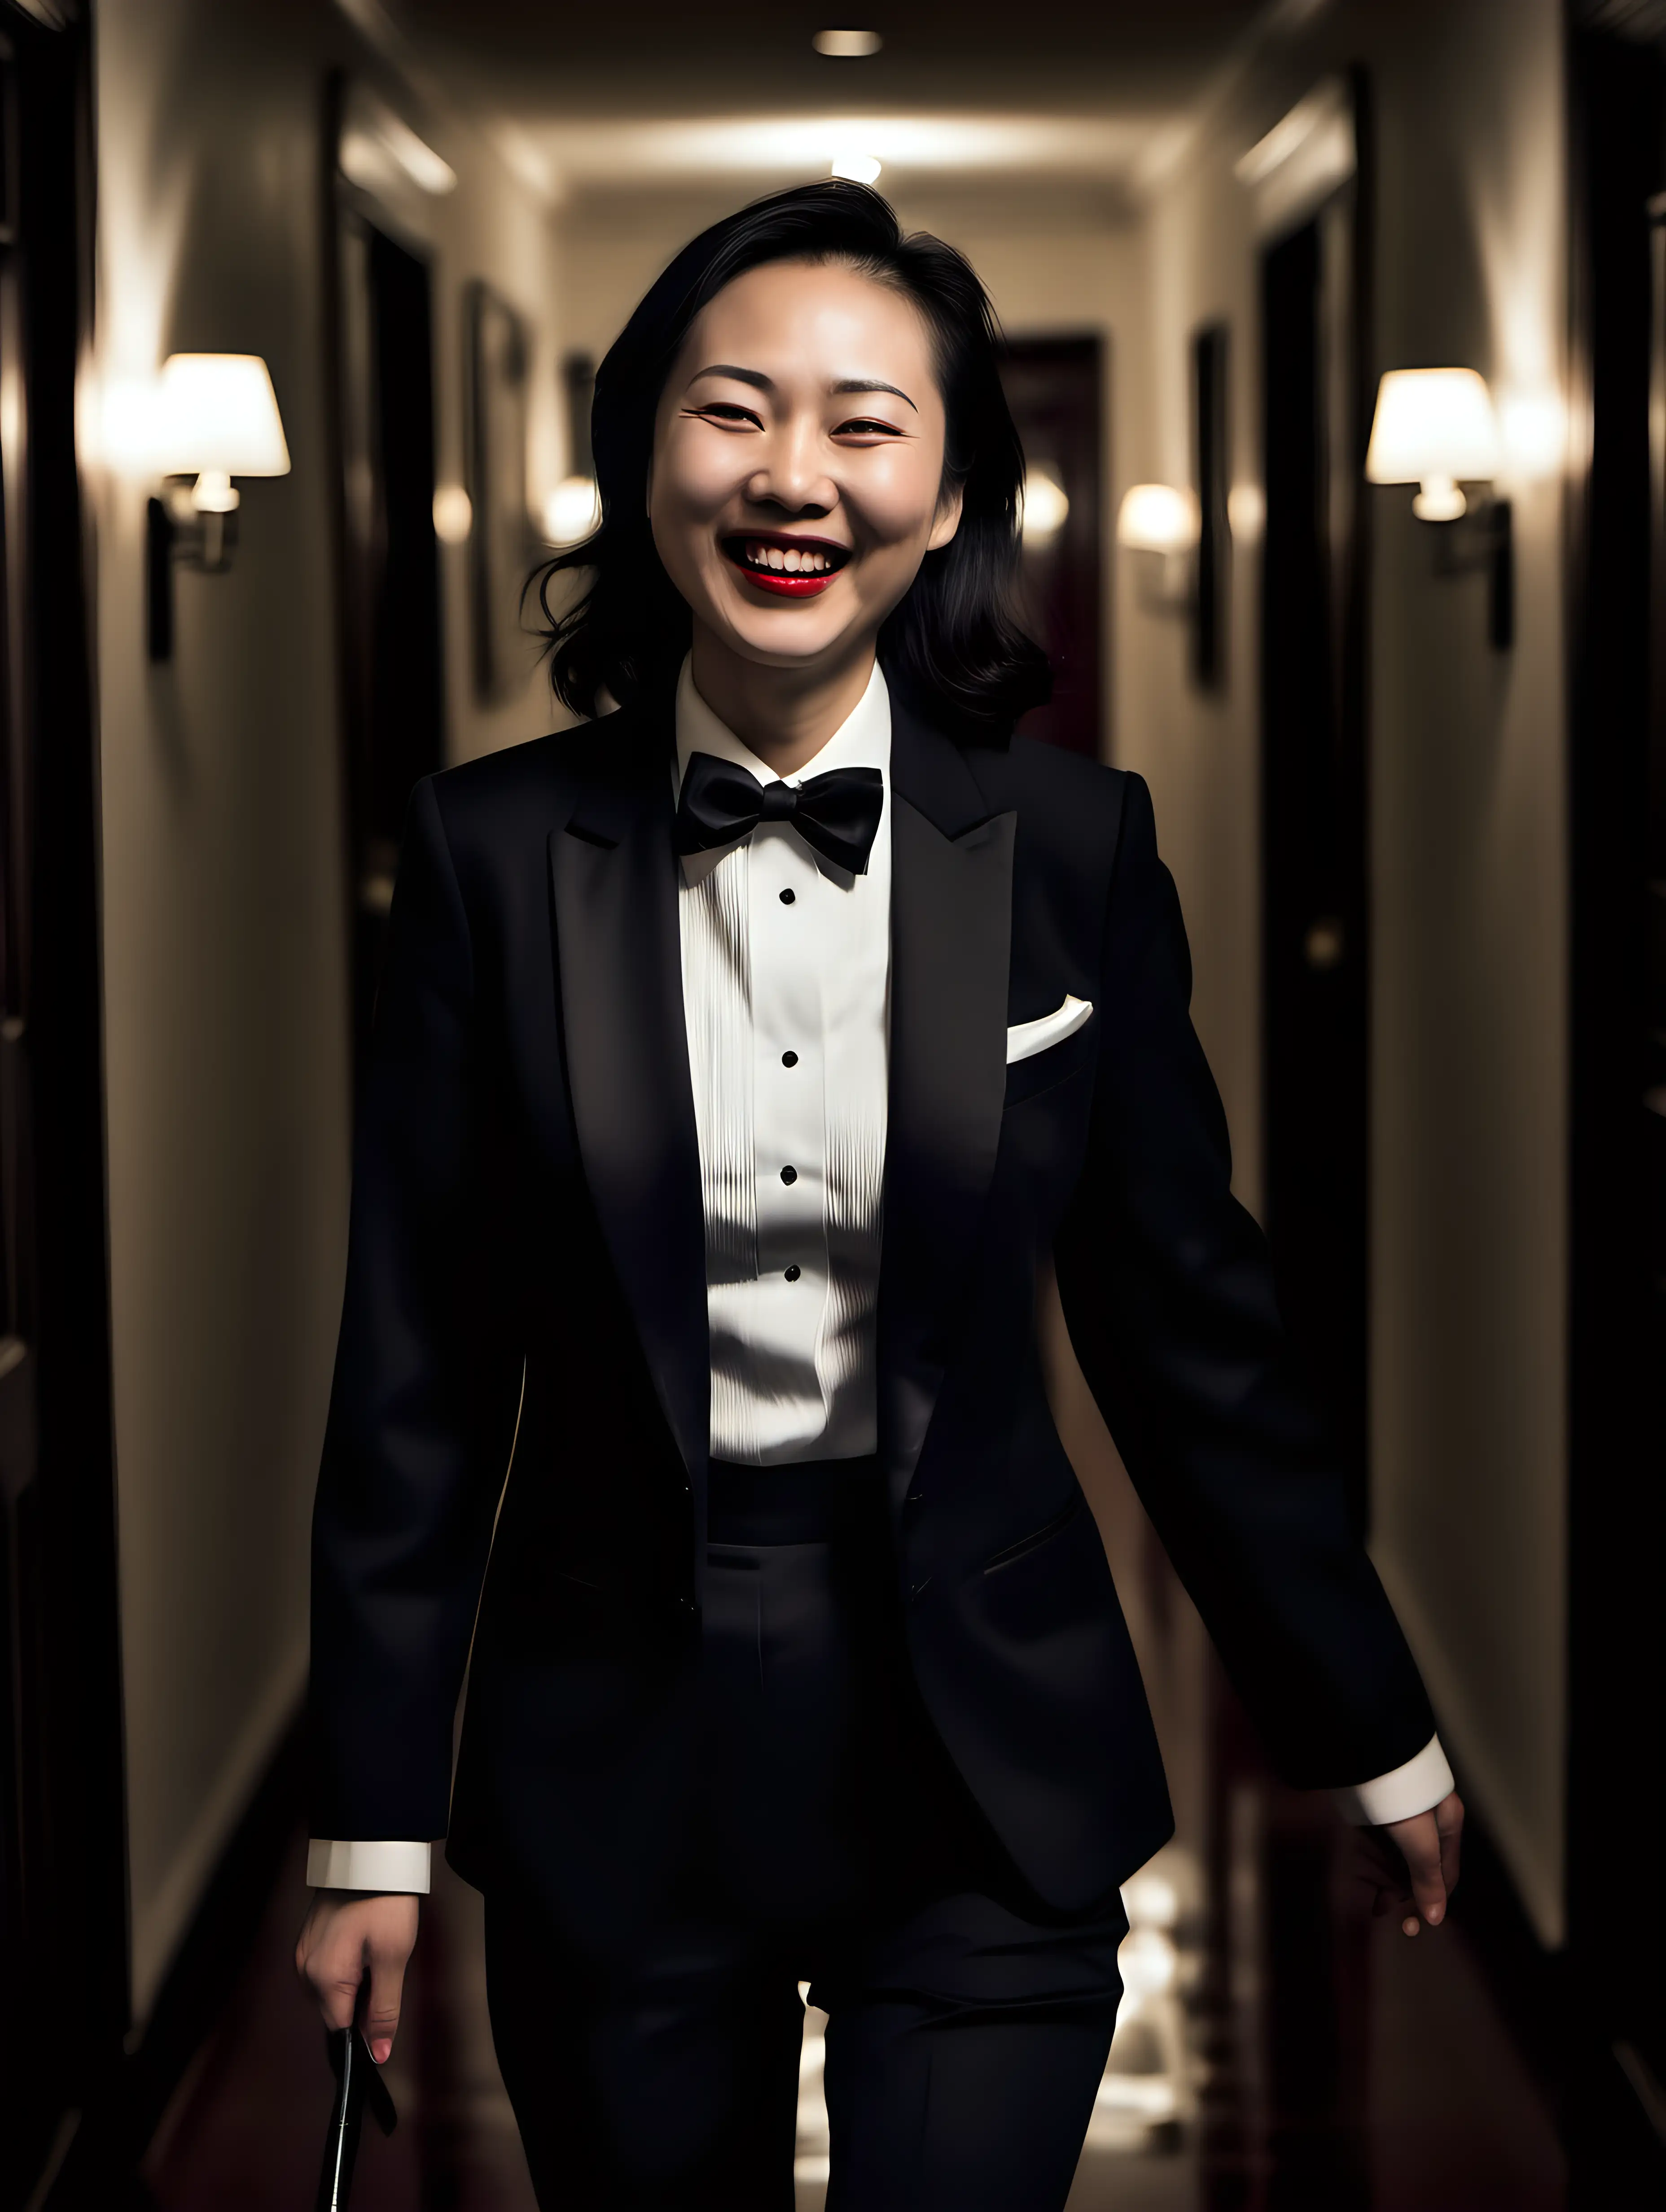 Smiling-Chinese-Woman-in-Tuxedo-Walking-Down-Dark-Mansion-Hallway